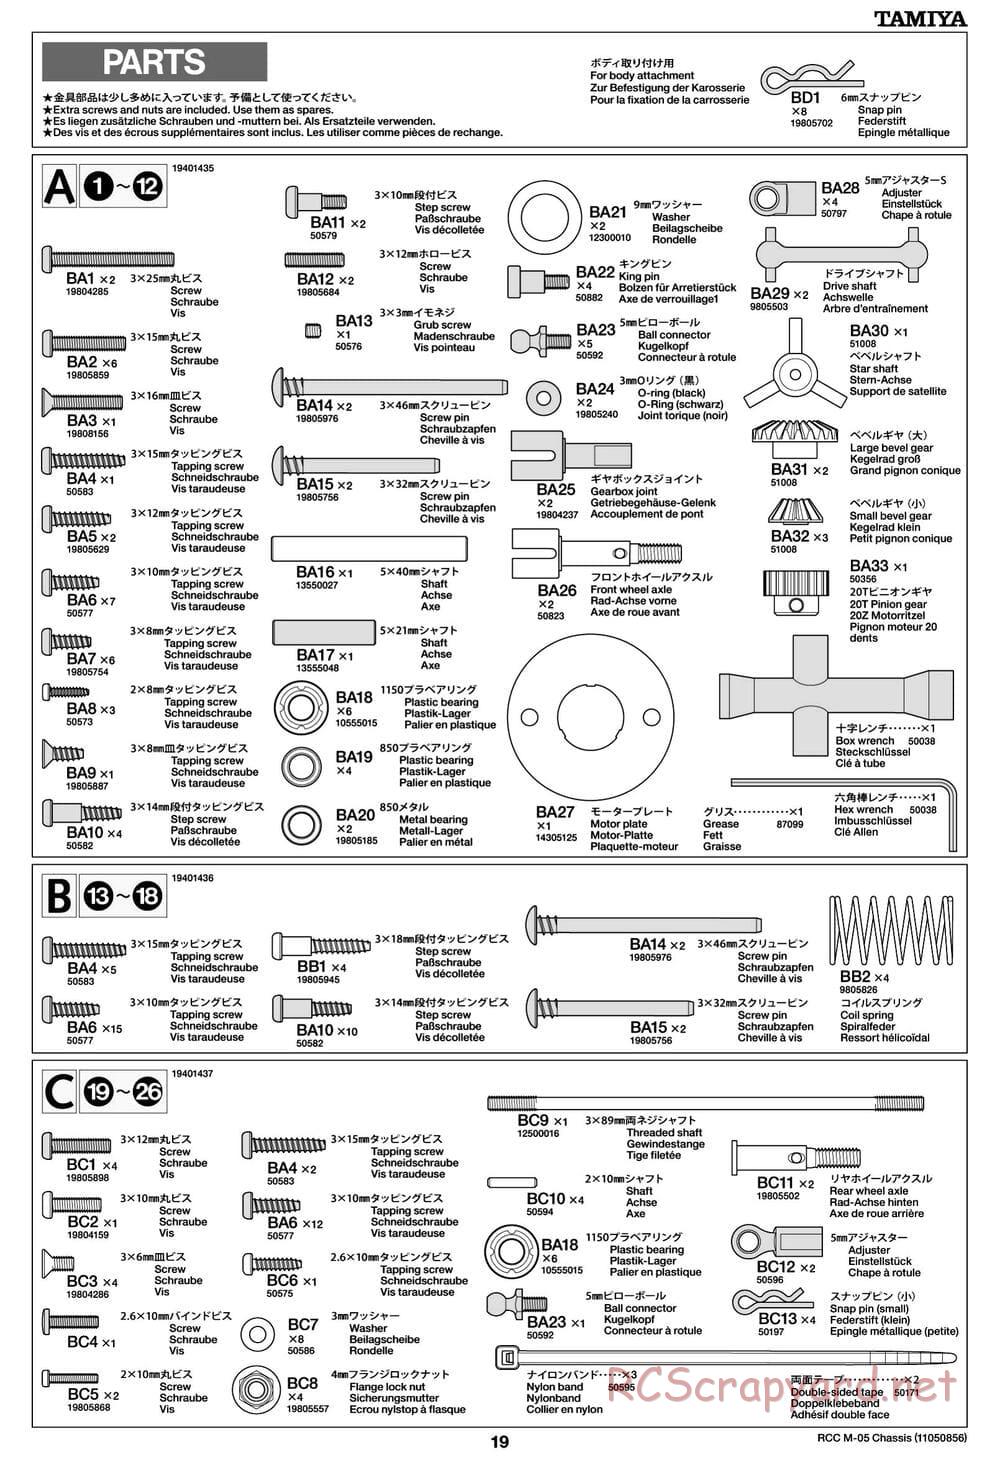 Tamiya - M-05 Chassis - Manual - Page 19